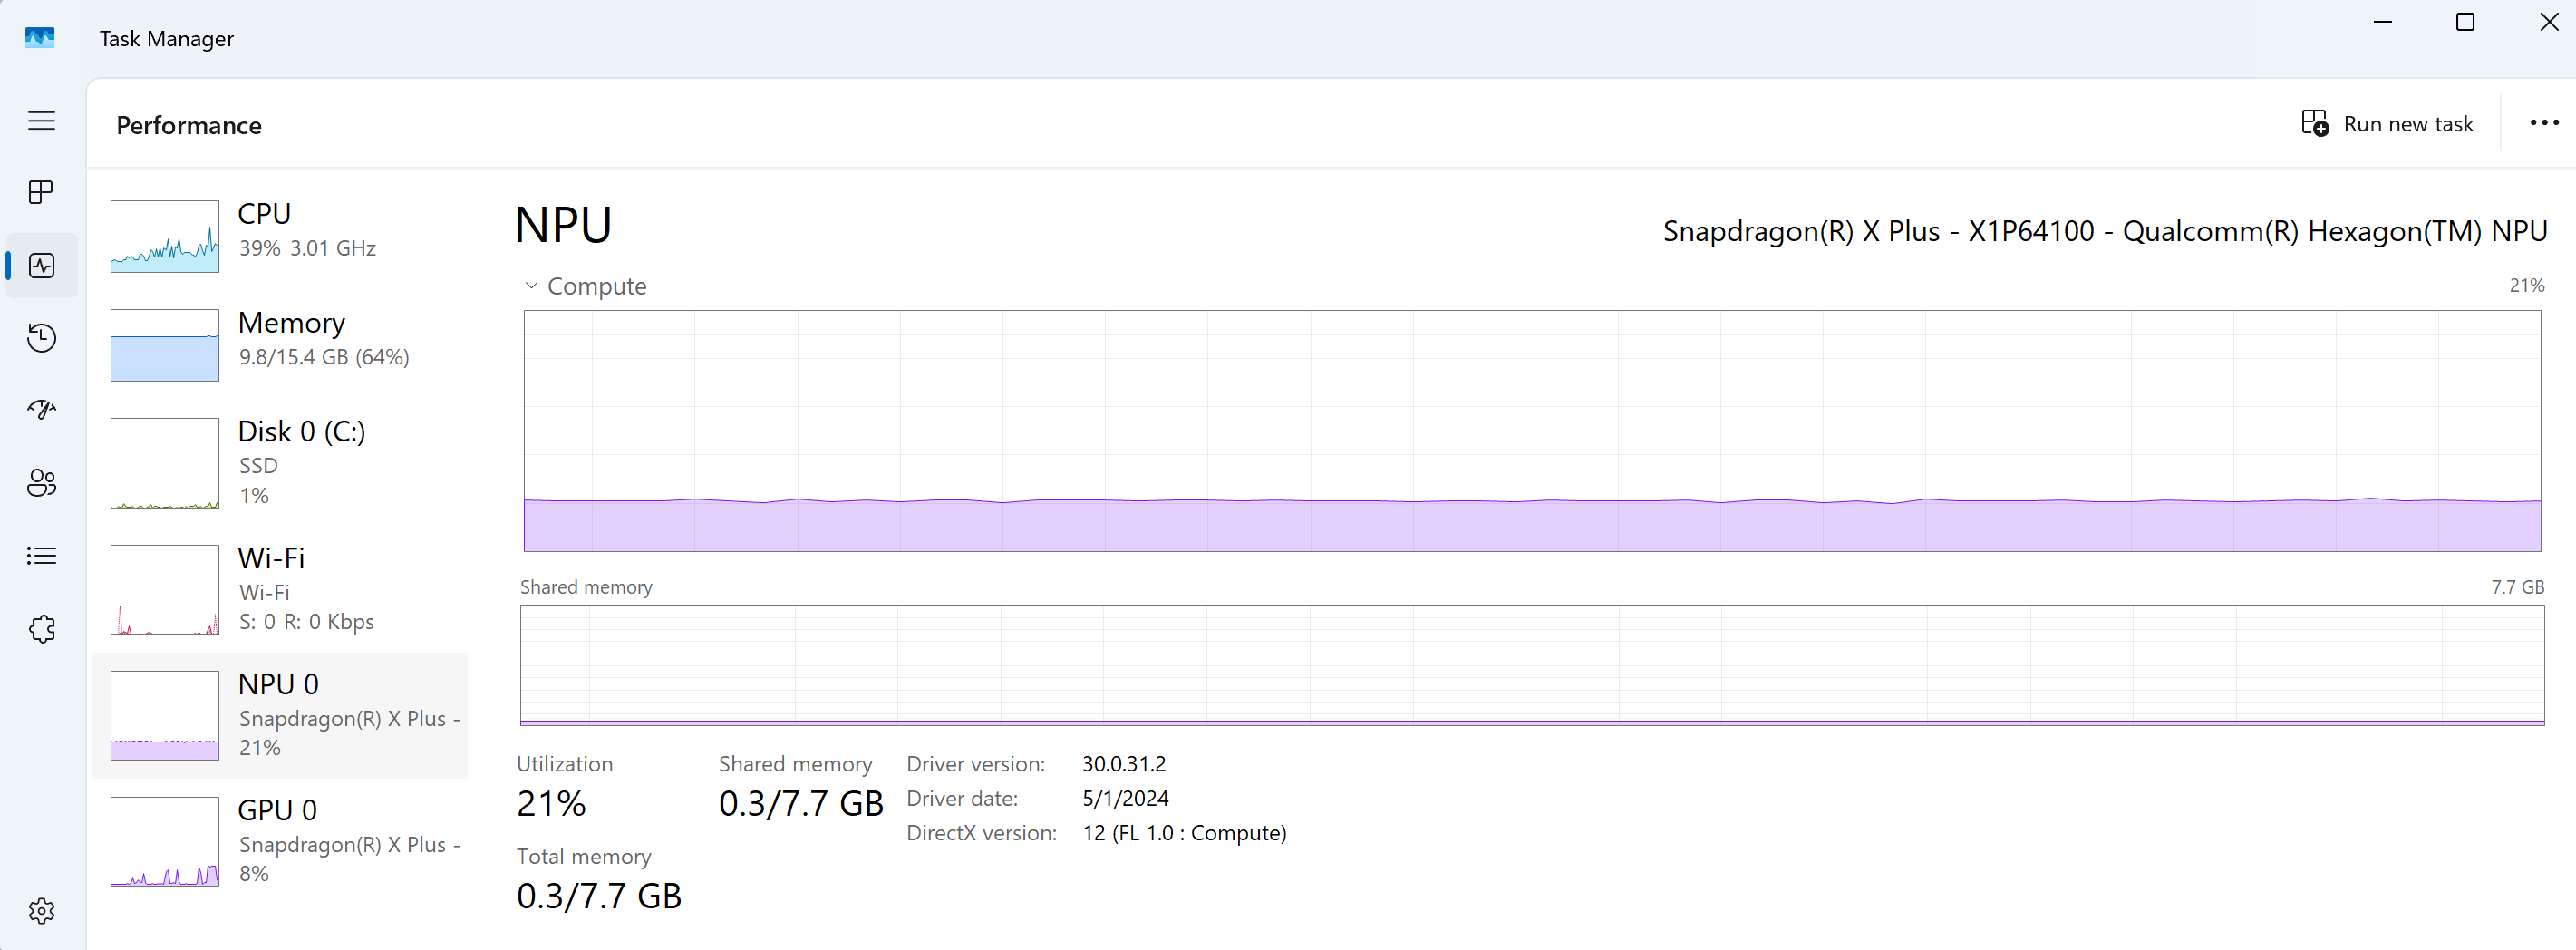 Cuplikan layar Windows Task Manager yang menampilkan performa NPU bersama CPU, GPU, Memori, Ethernet, dan Disk